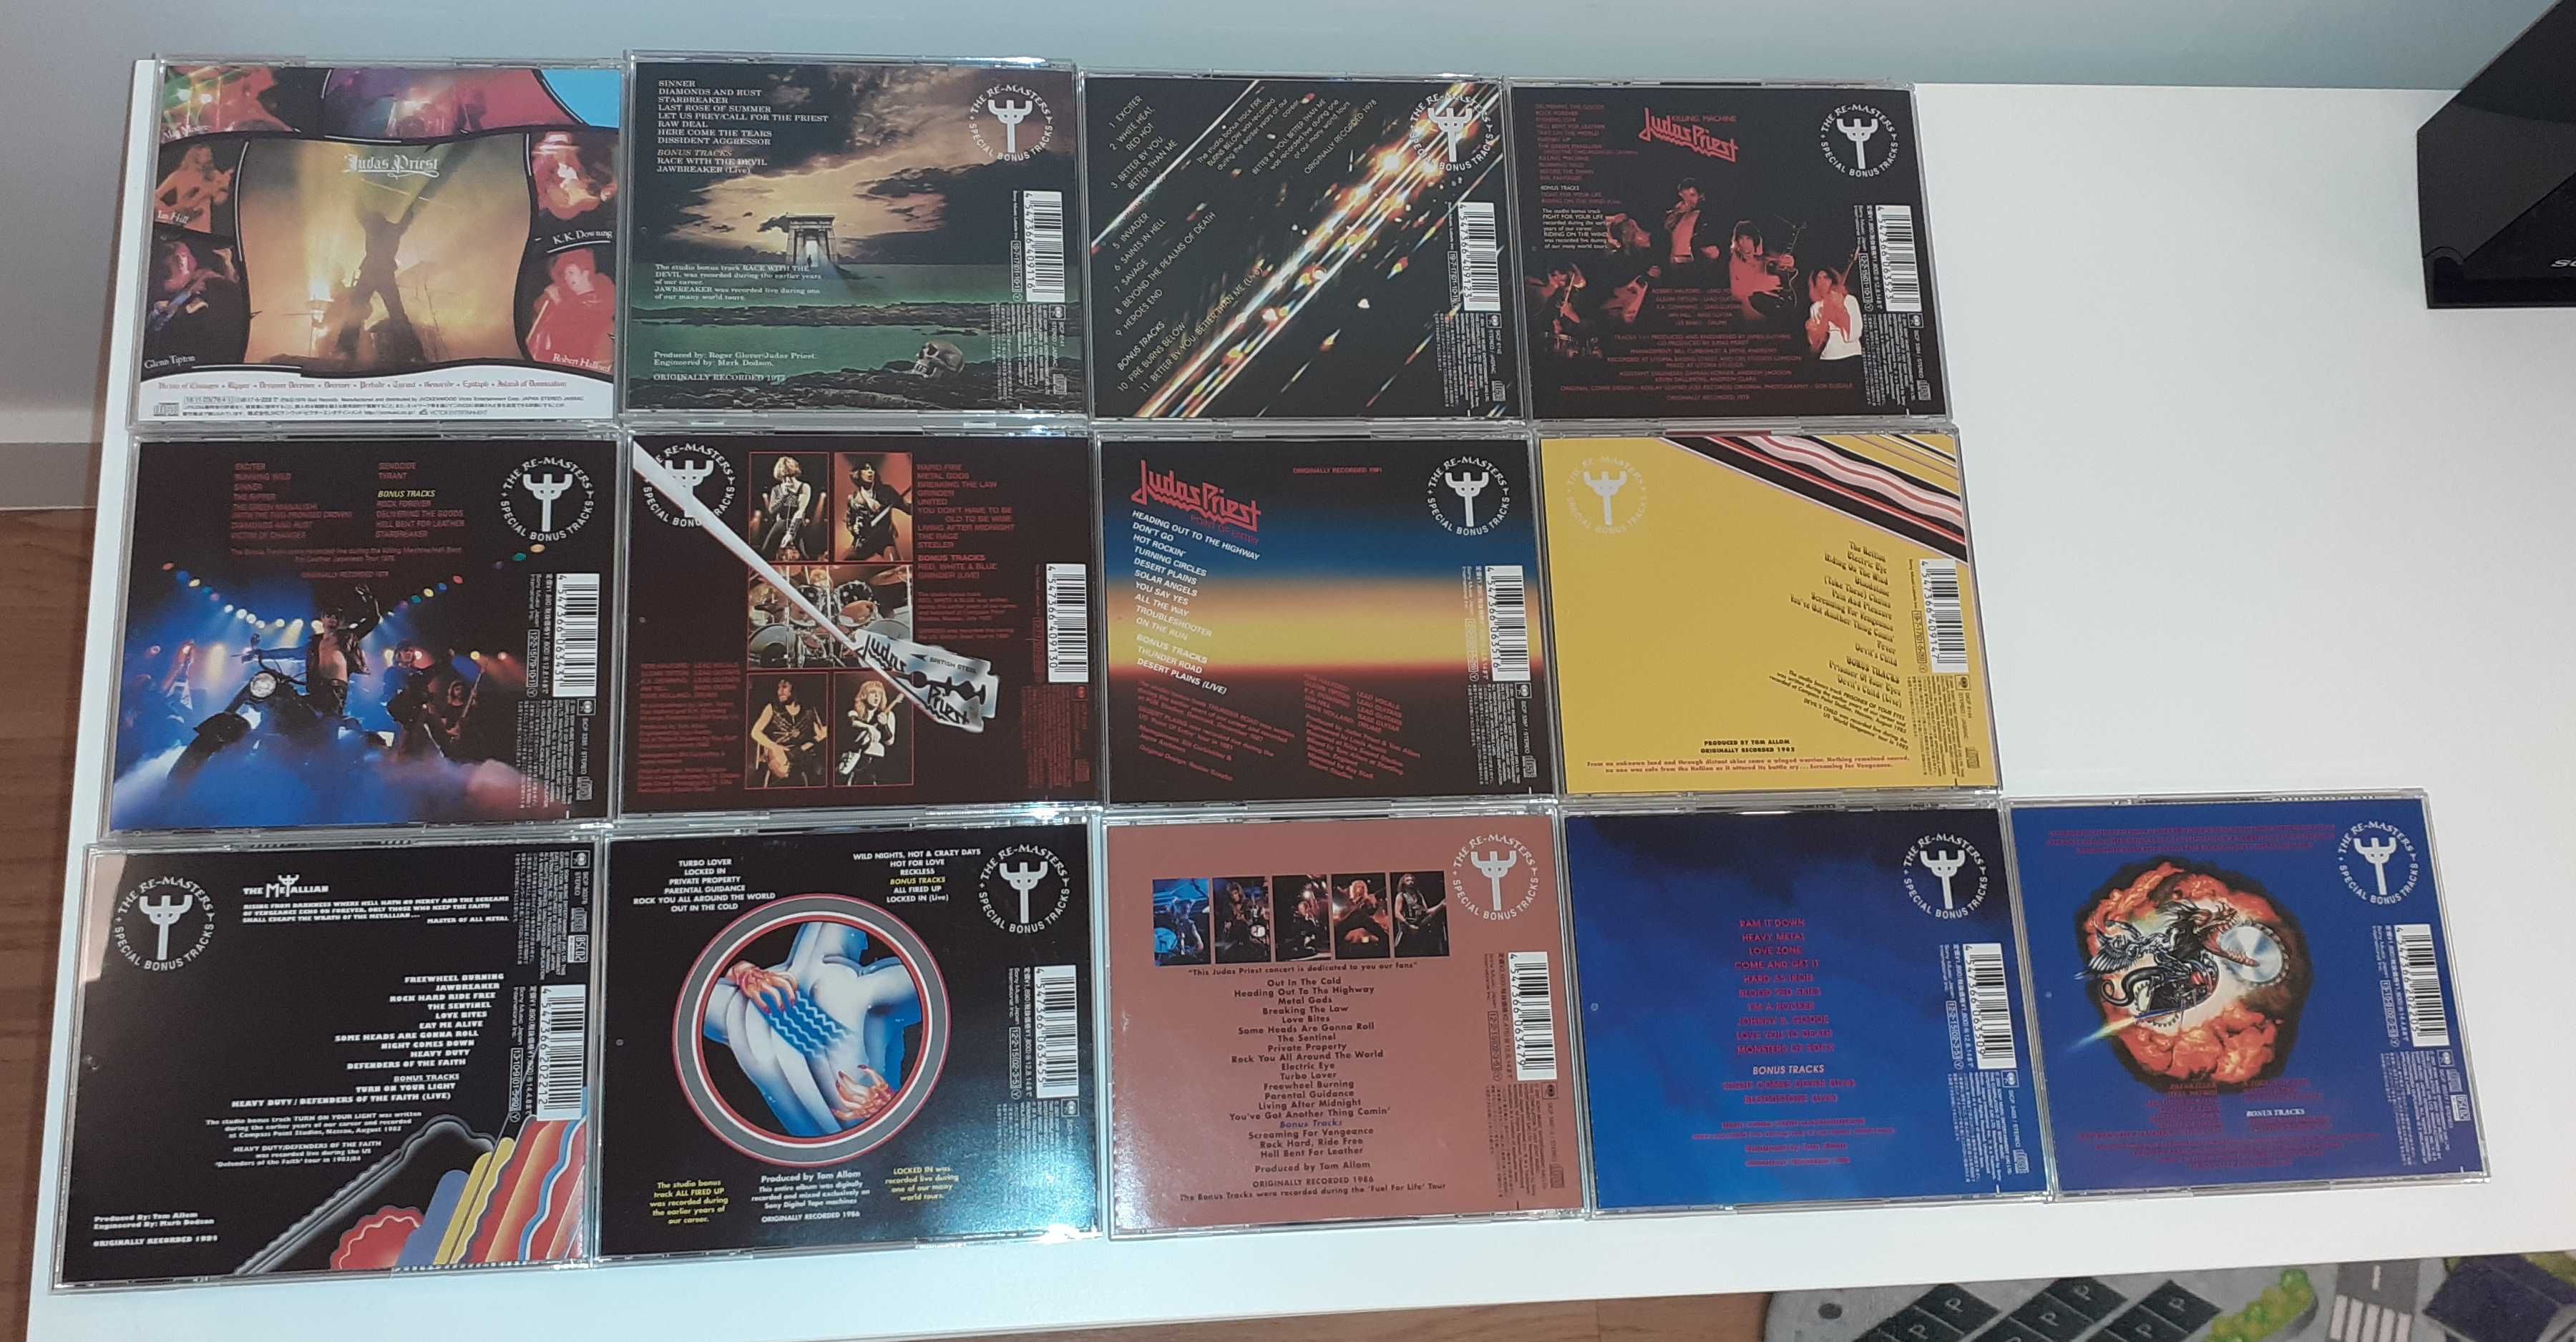 Judas Priest - 13 CD - Japanese Remasters - Novos!